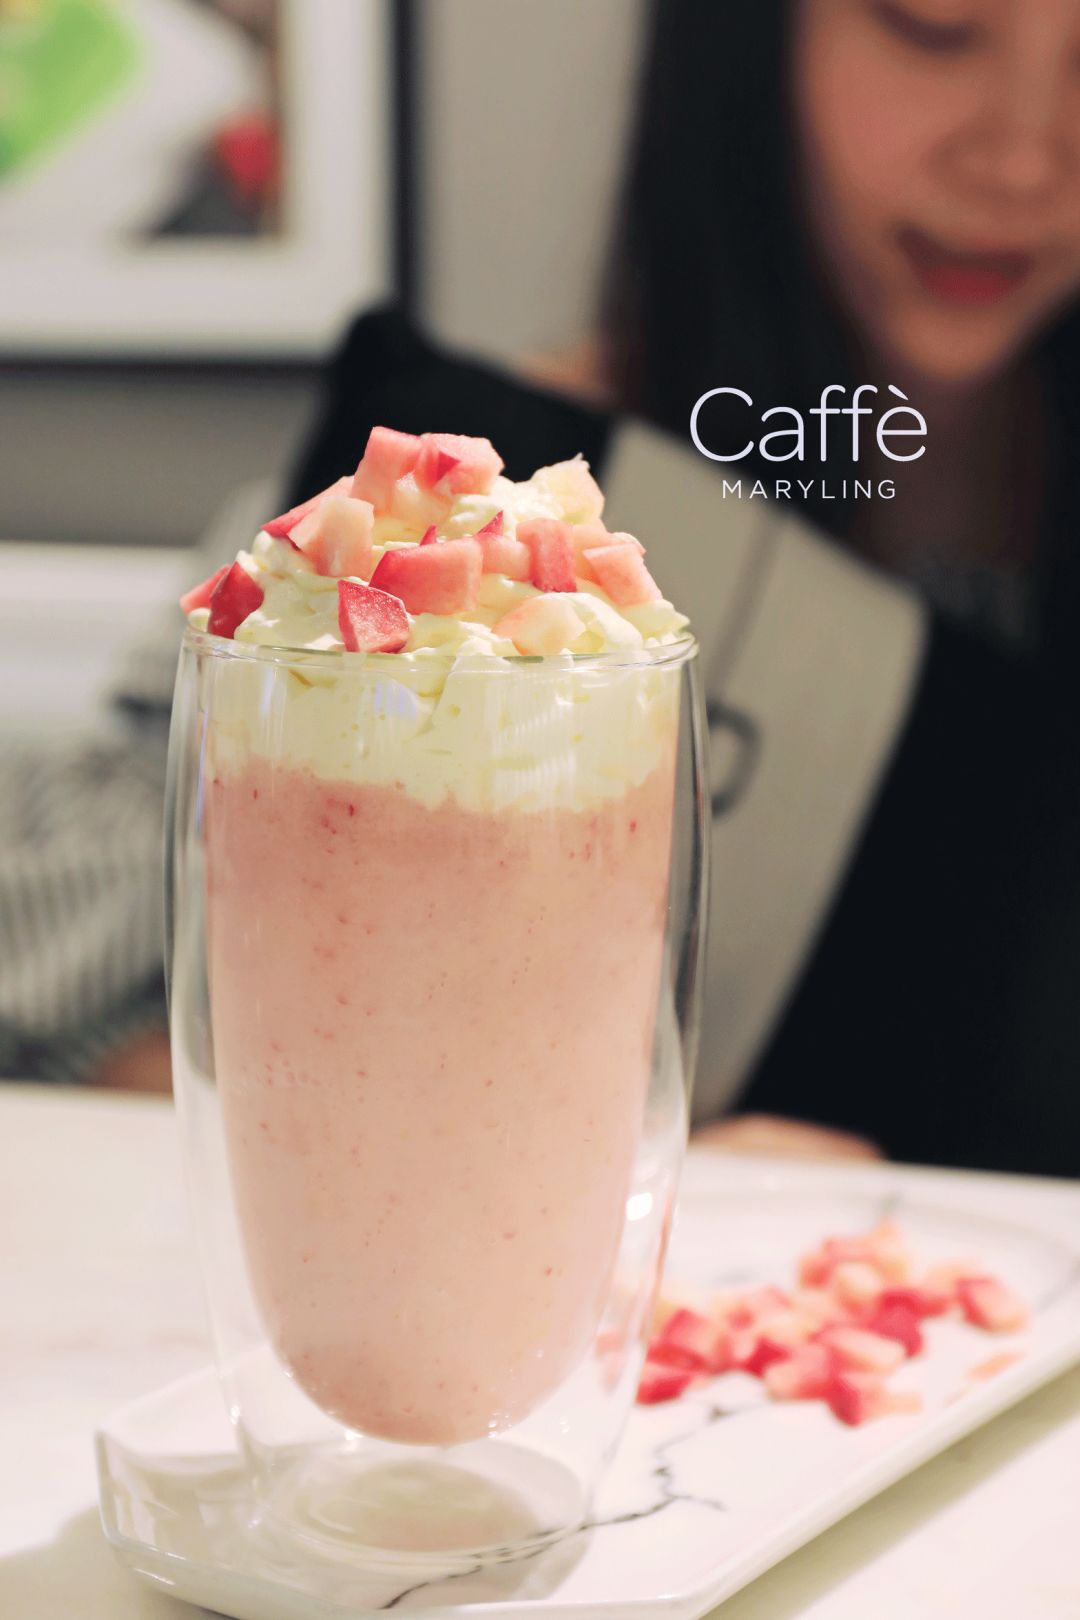 水蜜桃酸奶冰乐caffè maryling对食物的品质和美感的超高要求让这里